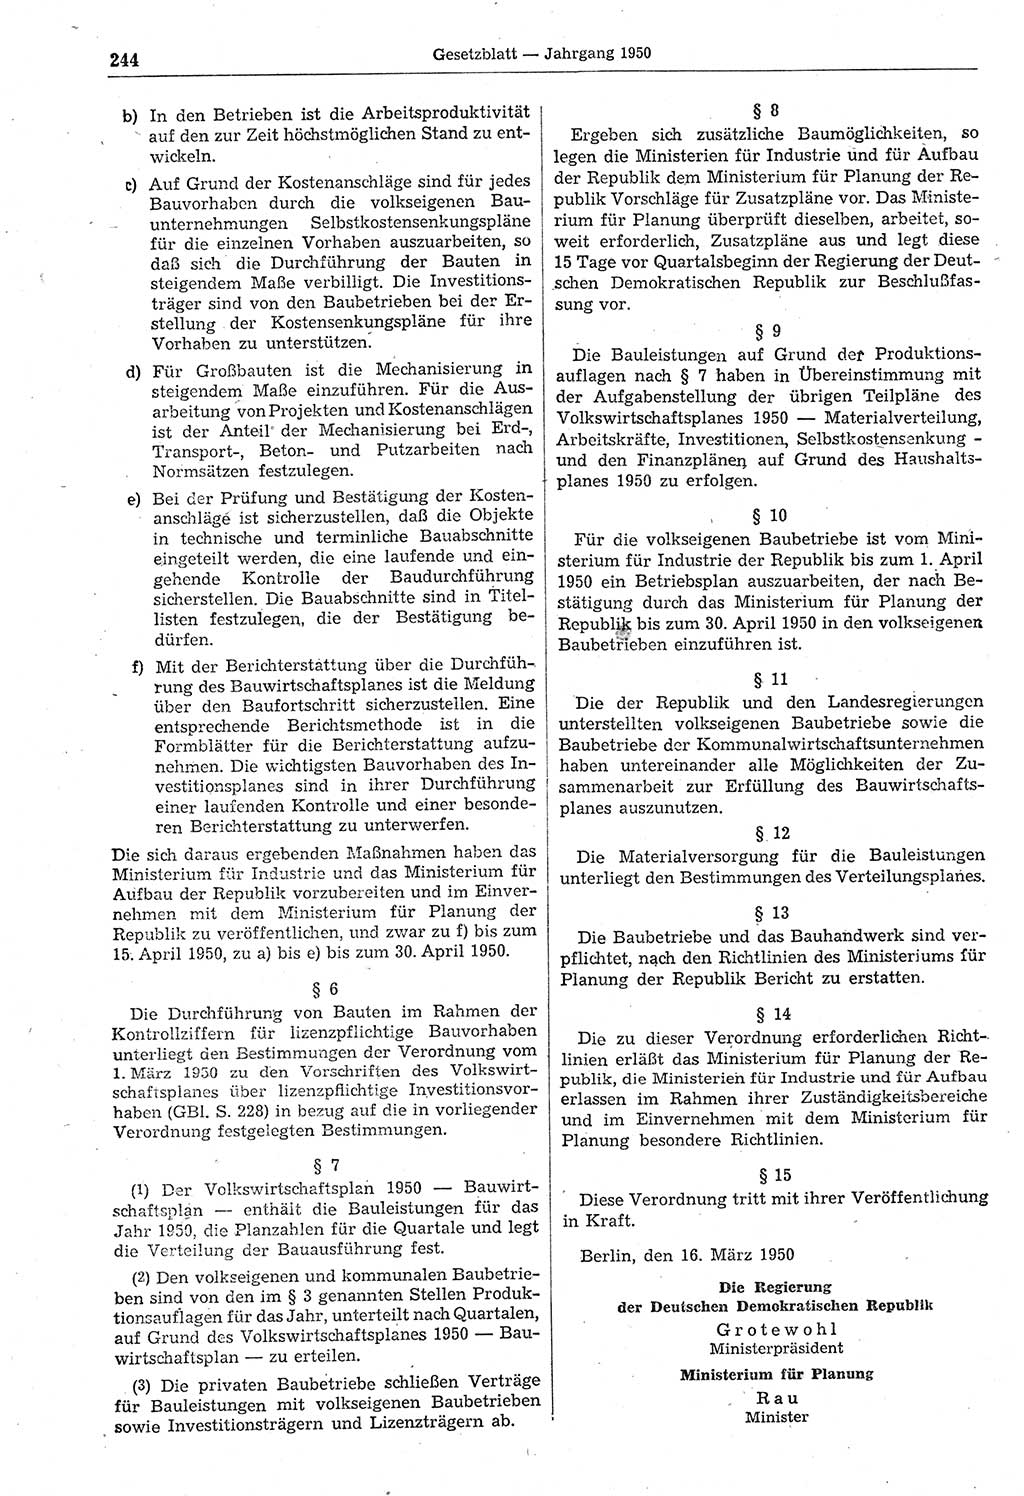 Gesetzblatt (GBl.) der Deutschen Demokratischen Republik (DDR) 1950, Seite 244 (GBl. DDR 1950, S. 244)